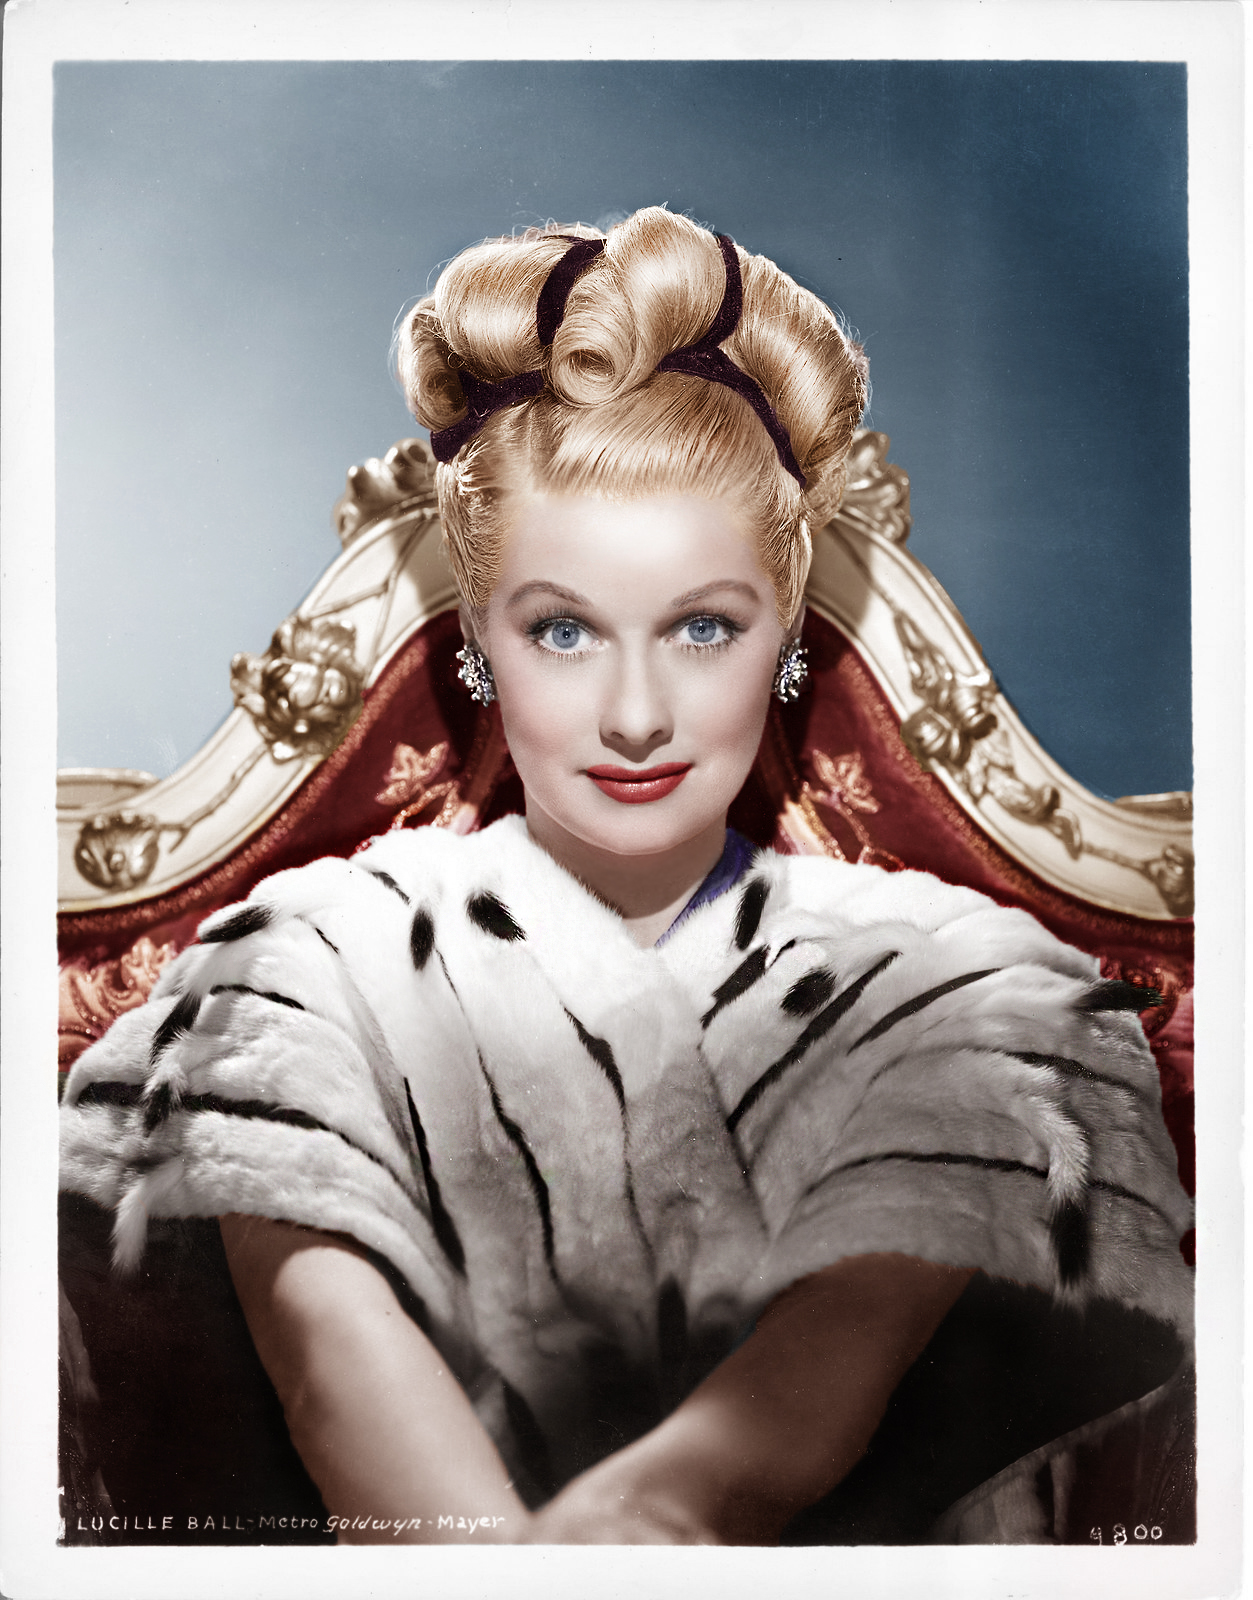 Lucille Ball Image Wallpaper Photos